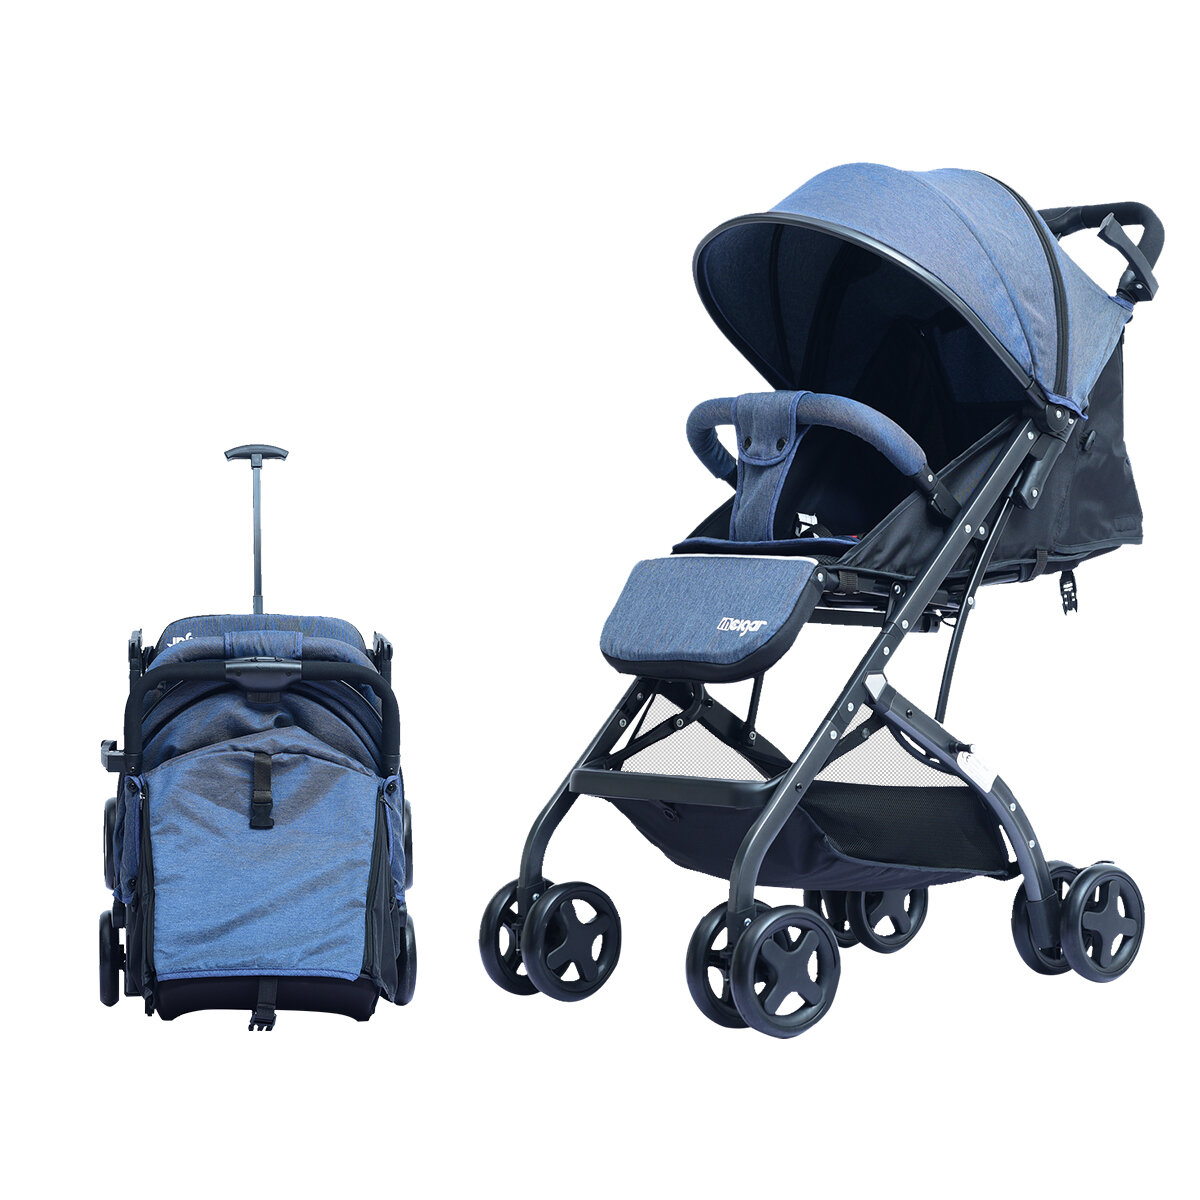 Carrinho de bebê ajustável super leve carrinhos de bebê dobráveis Fácil de andar ou deitar com amortecedores para crianças de 0 a 36 meses